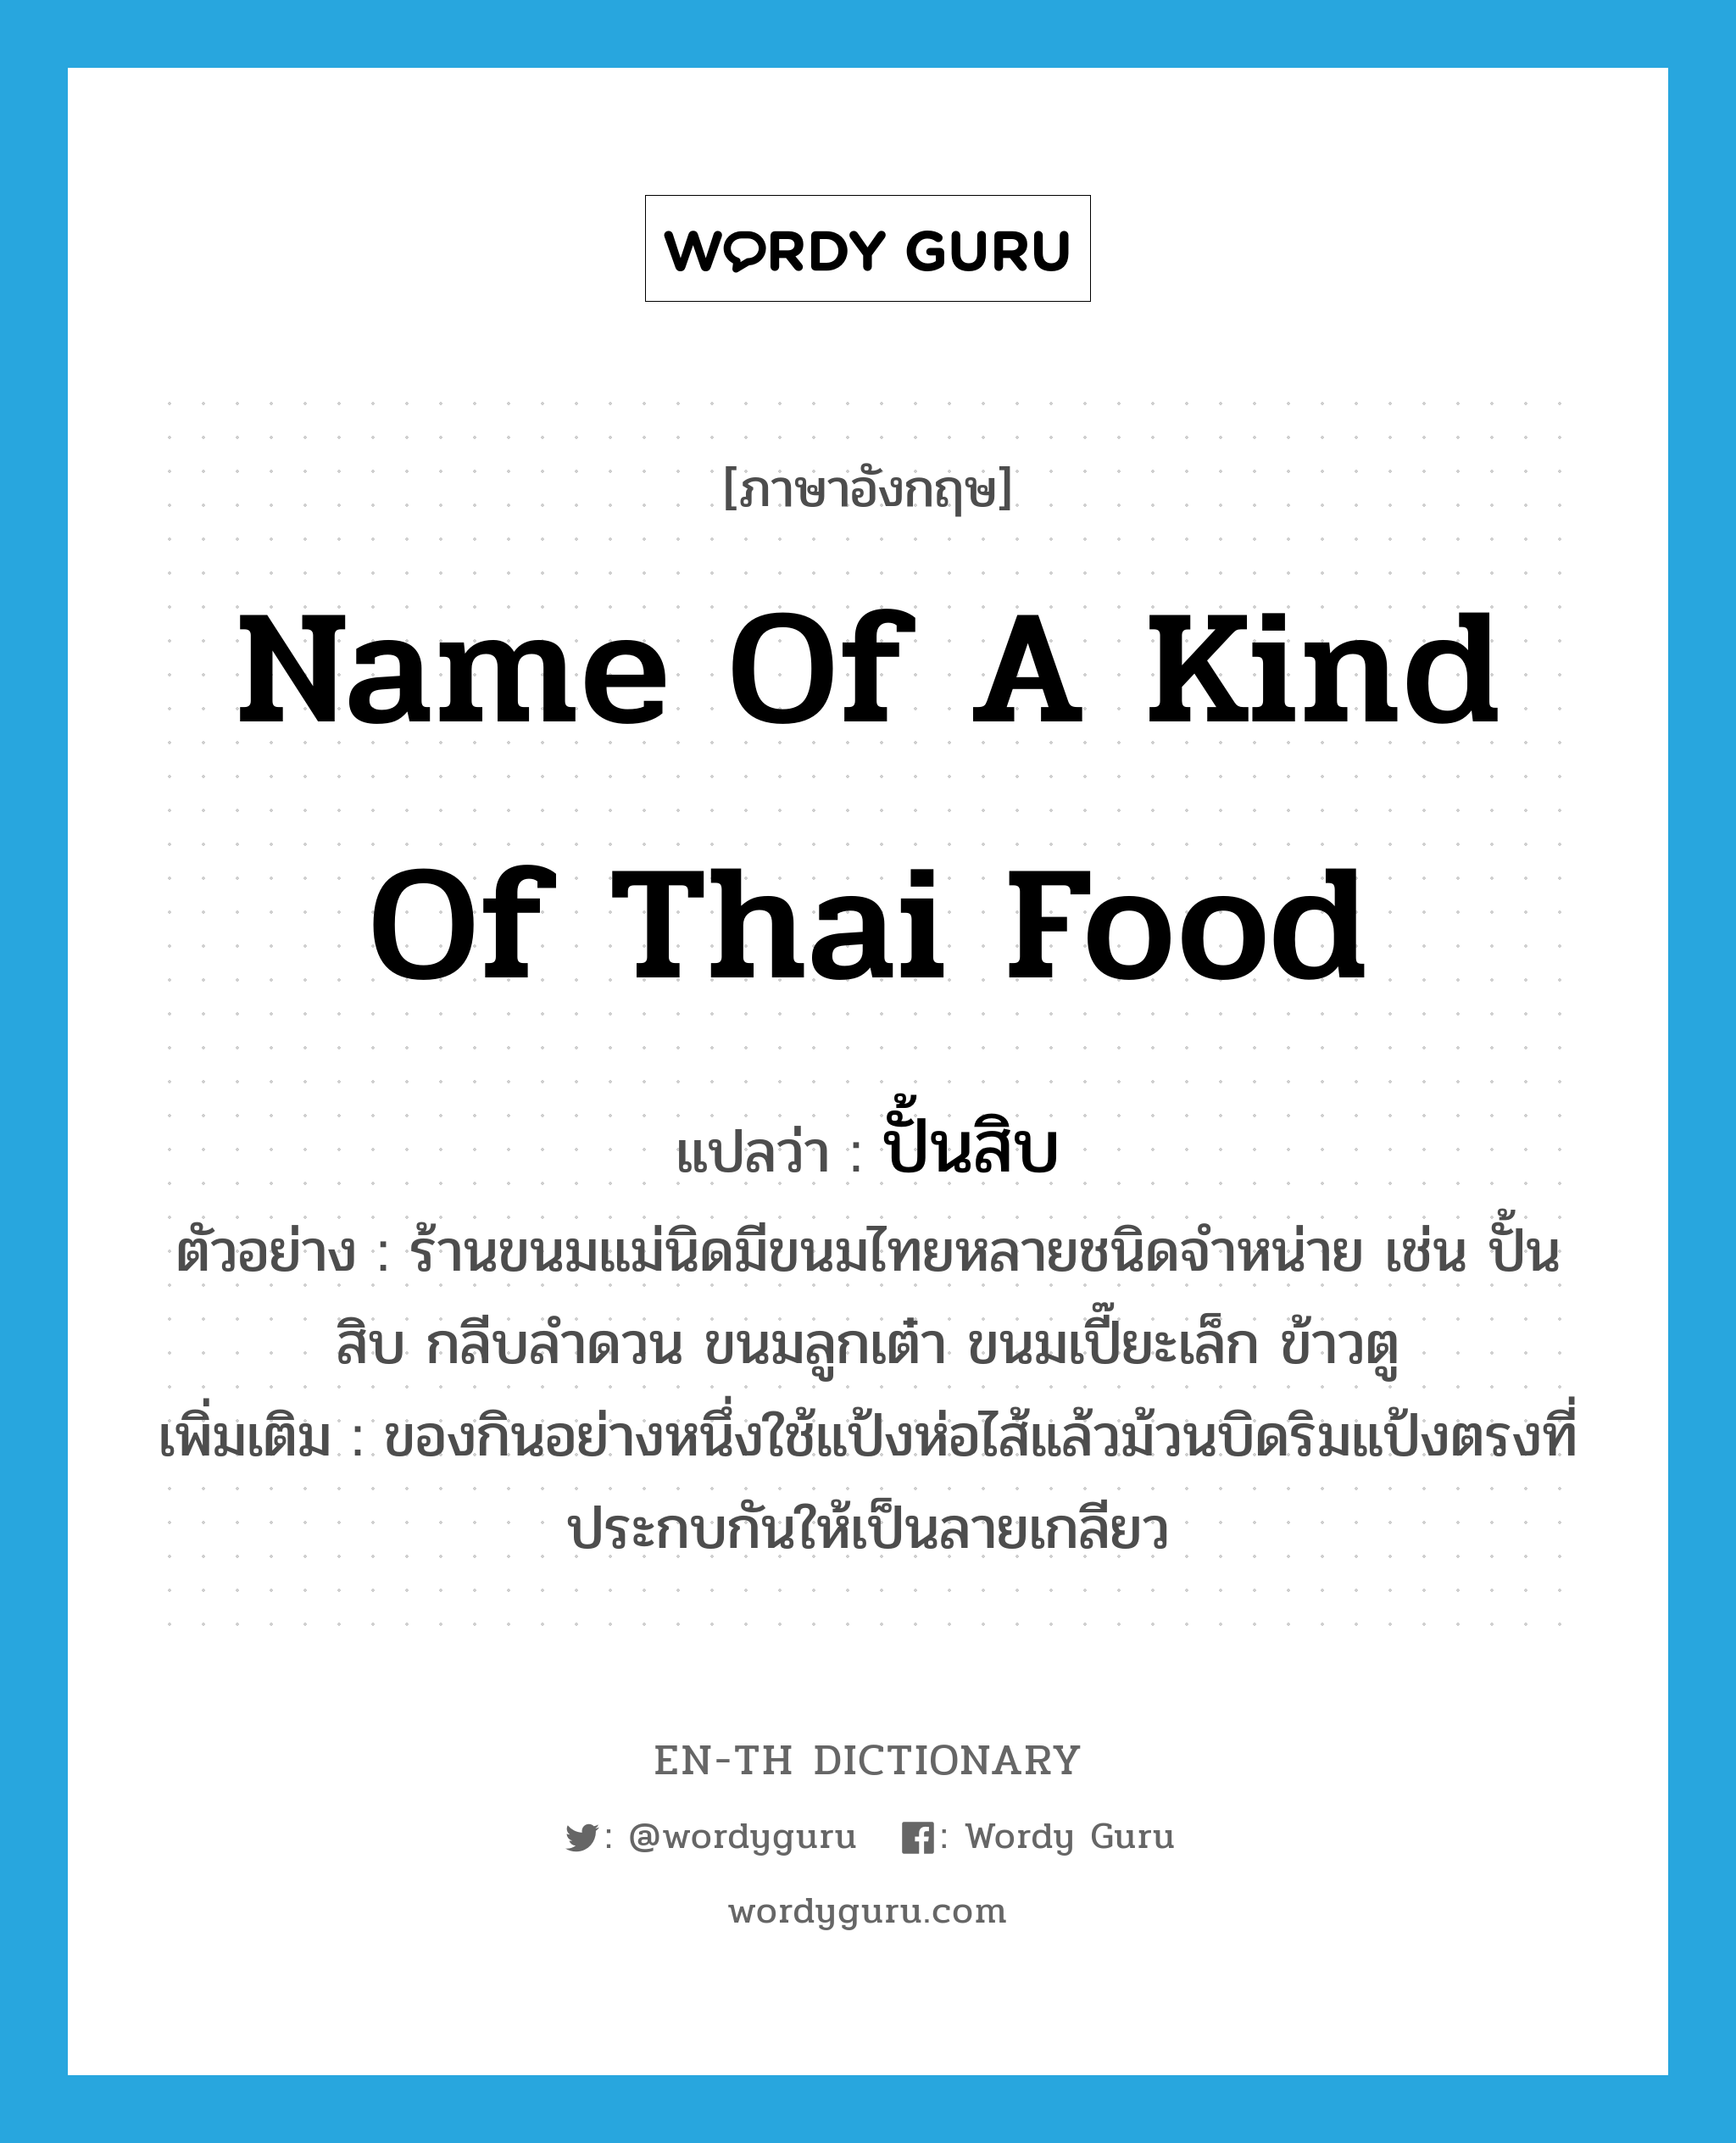 name of a kind of Thai food แปลว่า?, คำศัพท์ภาษาอังกฤษ name of a kind of Thai food แปลว่า ปั้นสิบ ประเภท N ตัวอย่าง ร้านขนมแม่นิดมีขนมไทยหลายชนิดจำหน่าย เช่น ปั้นสิบ กลีบลำดวน ขนมลูกเต๋า ขนมเปี๊ยะเล็ก ข้าวตู เพิ่มเติม ของกินอย่างหนึ่งใช้แป้งห่อไส้แล้วม้วนบิดริมแป้งตรงที่ประกบกันให้เป็นลายเกลียว หมวด N